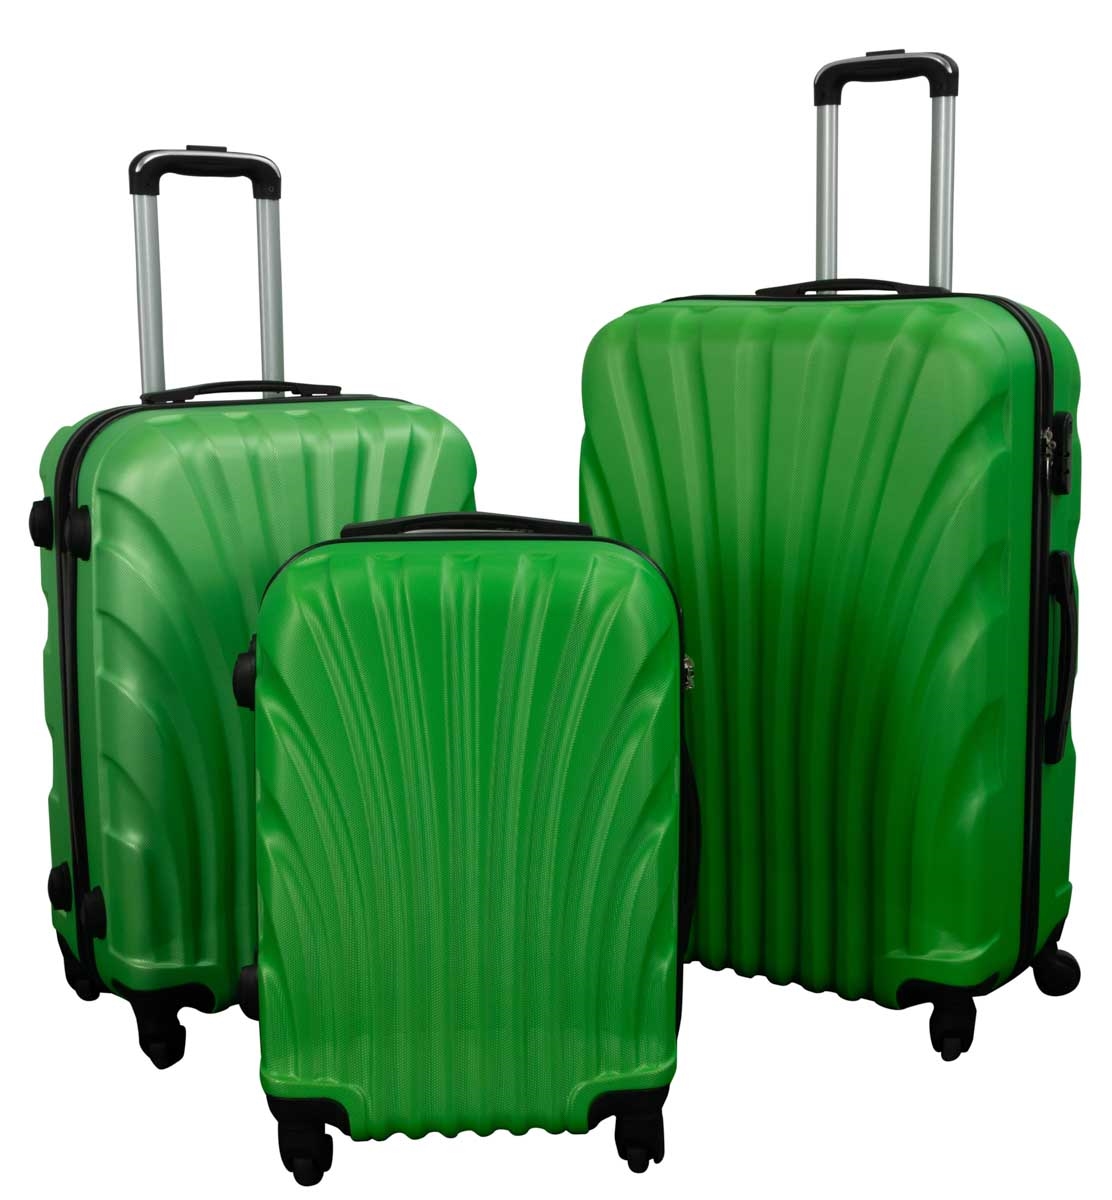 Kuffertsæt • 3 stk. Kufferter • Hardcase Grøn musling